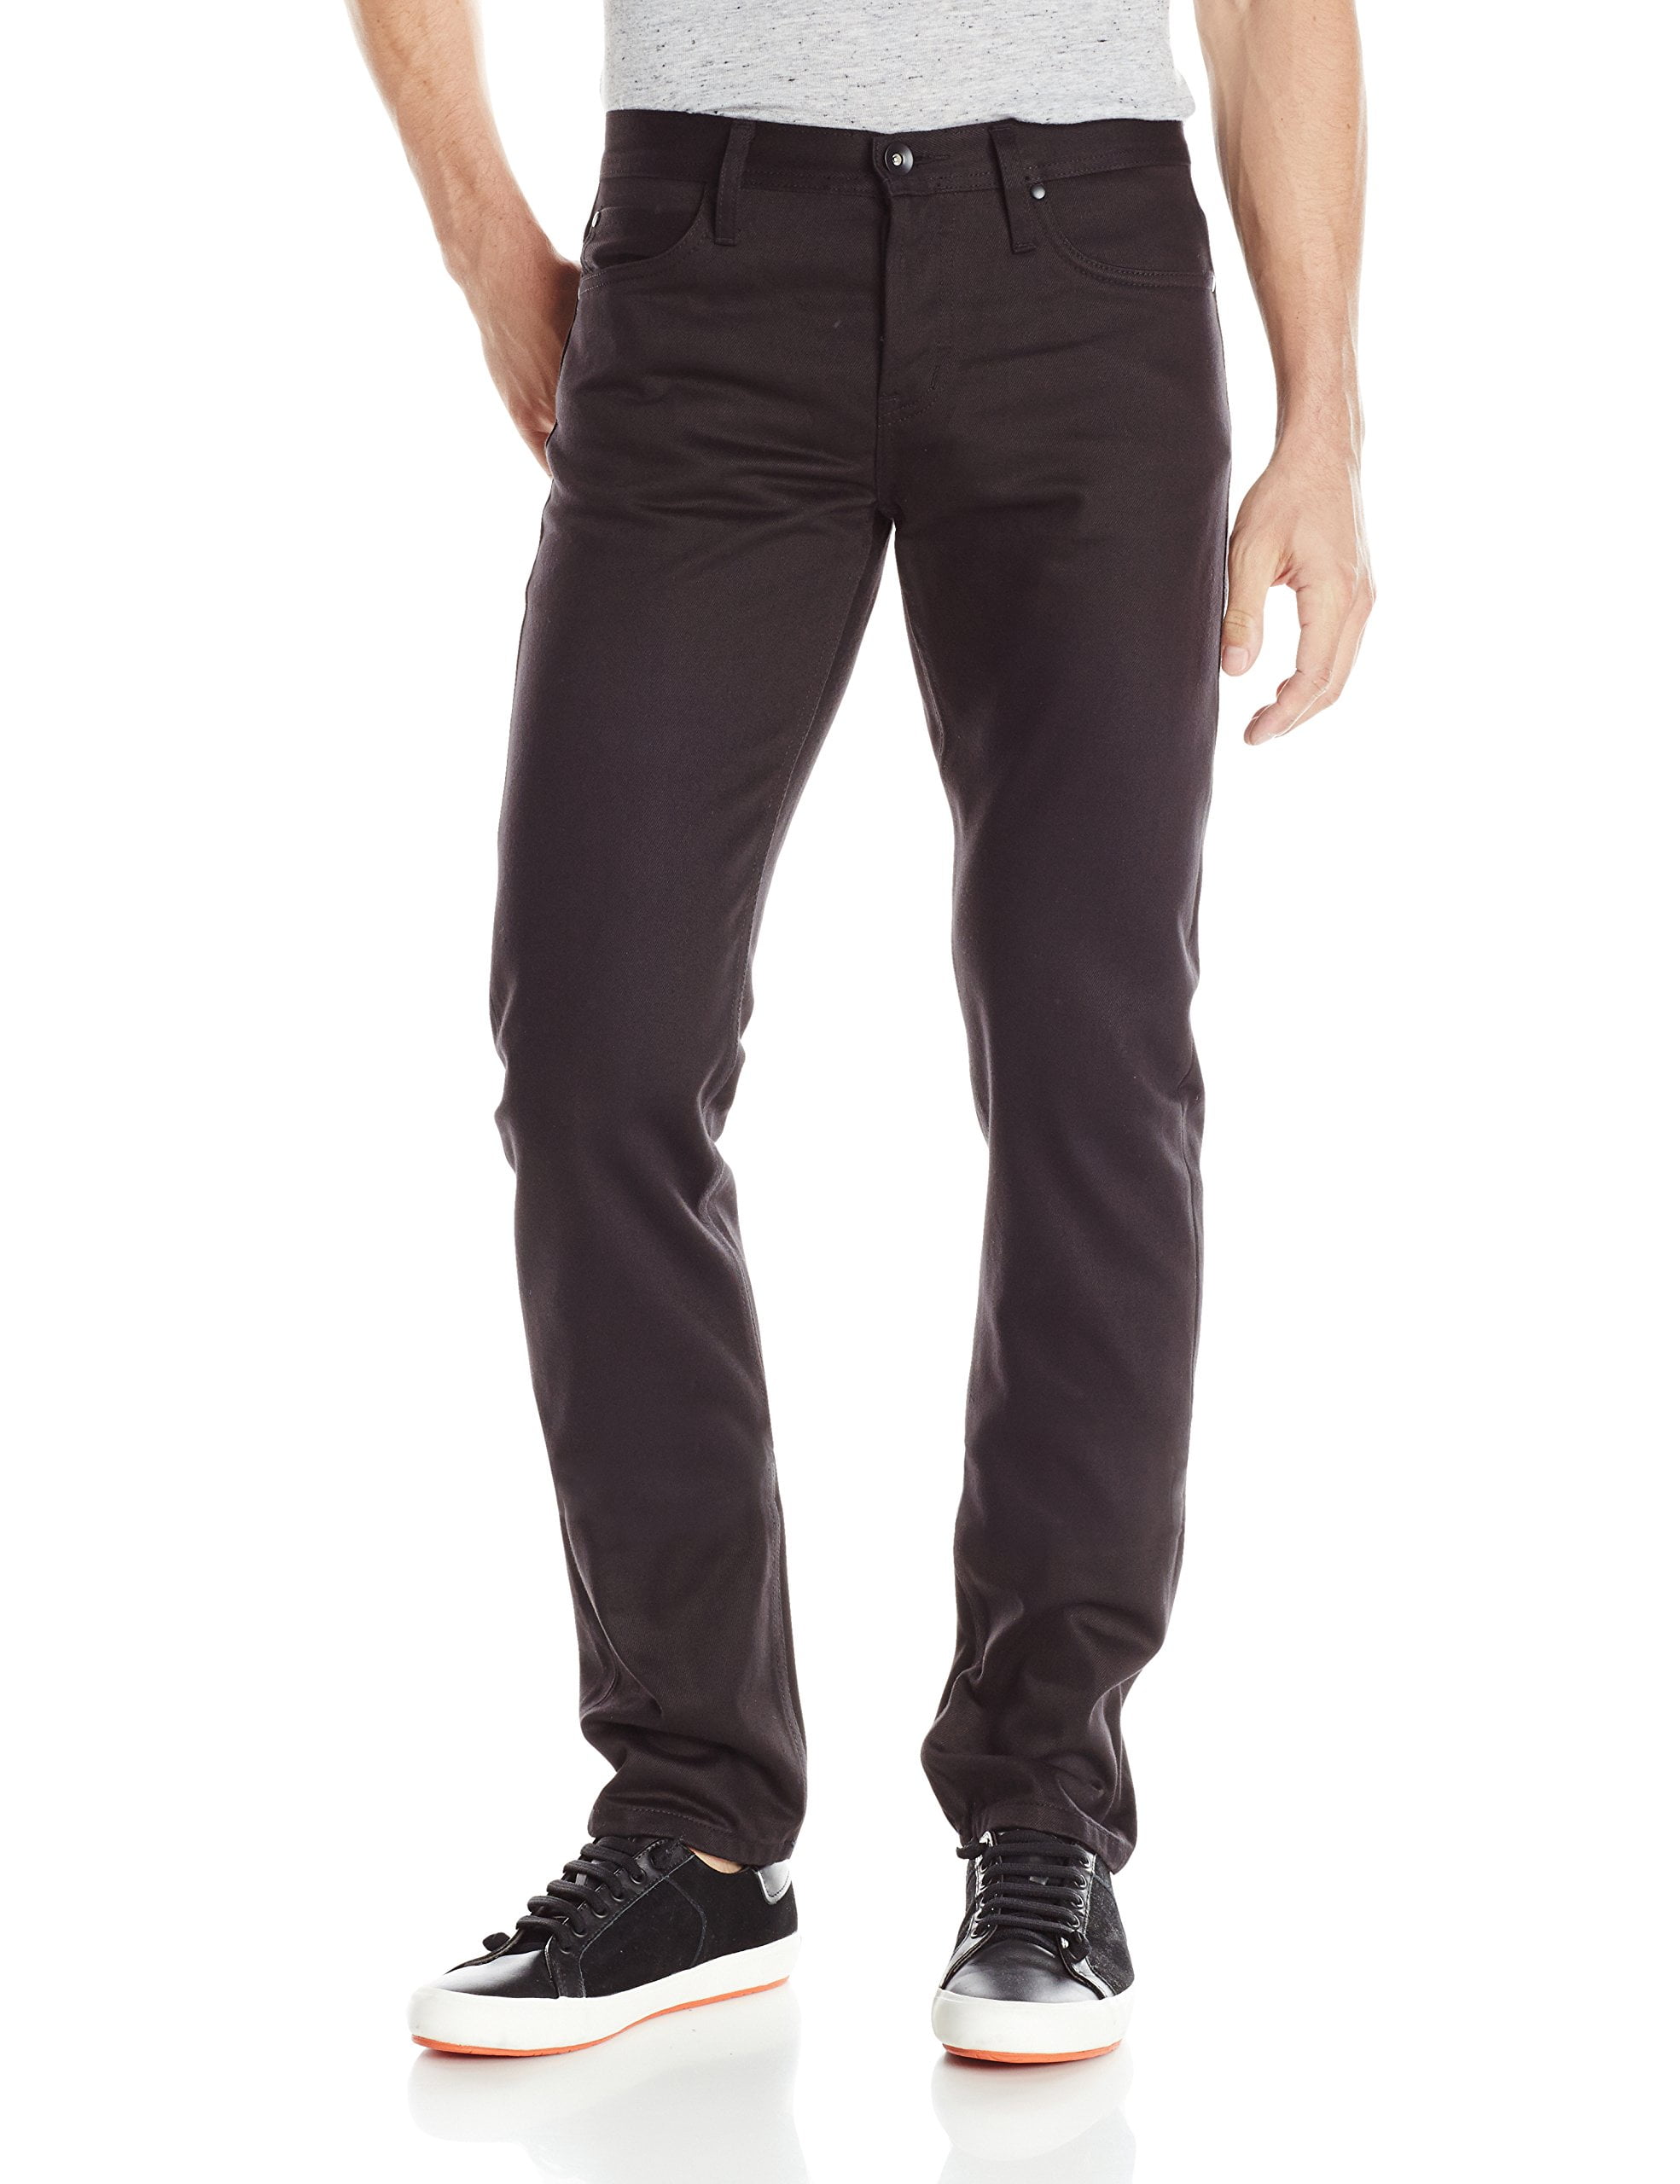 The Unbranded Brand - Mens Jeans 30x34 Skinny Leg Selvedge 30 - Walmart ...